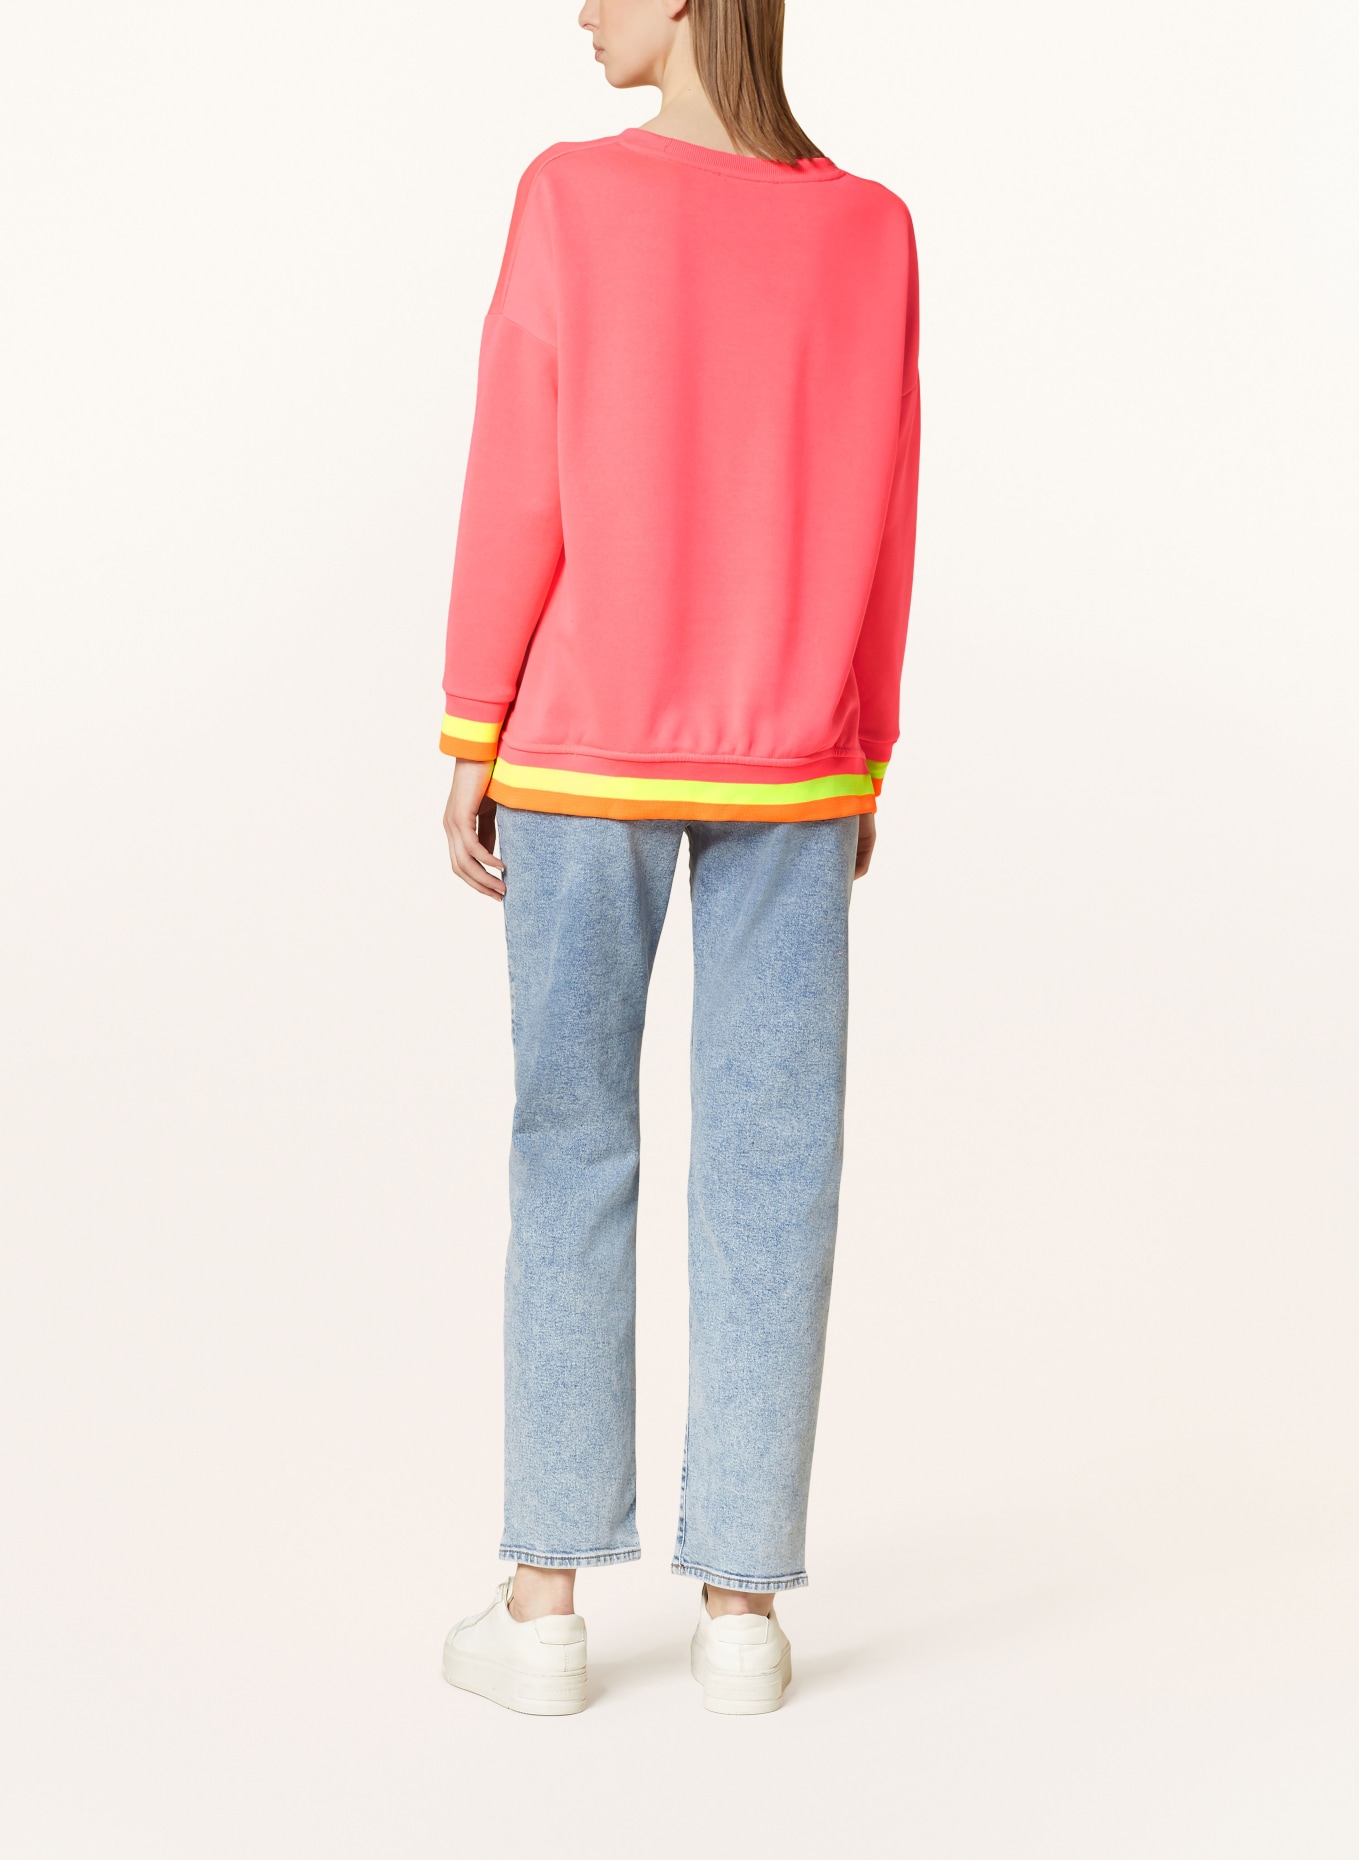 miss goodlife Sweatshirt, Color: NEON PINK/ NEON ORANGE (Image 3)